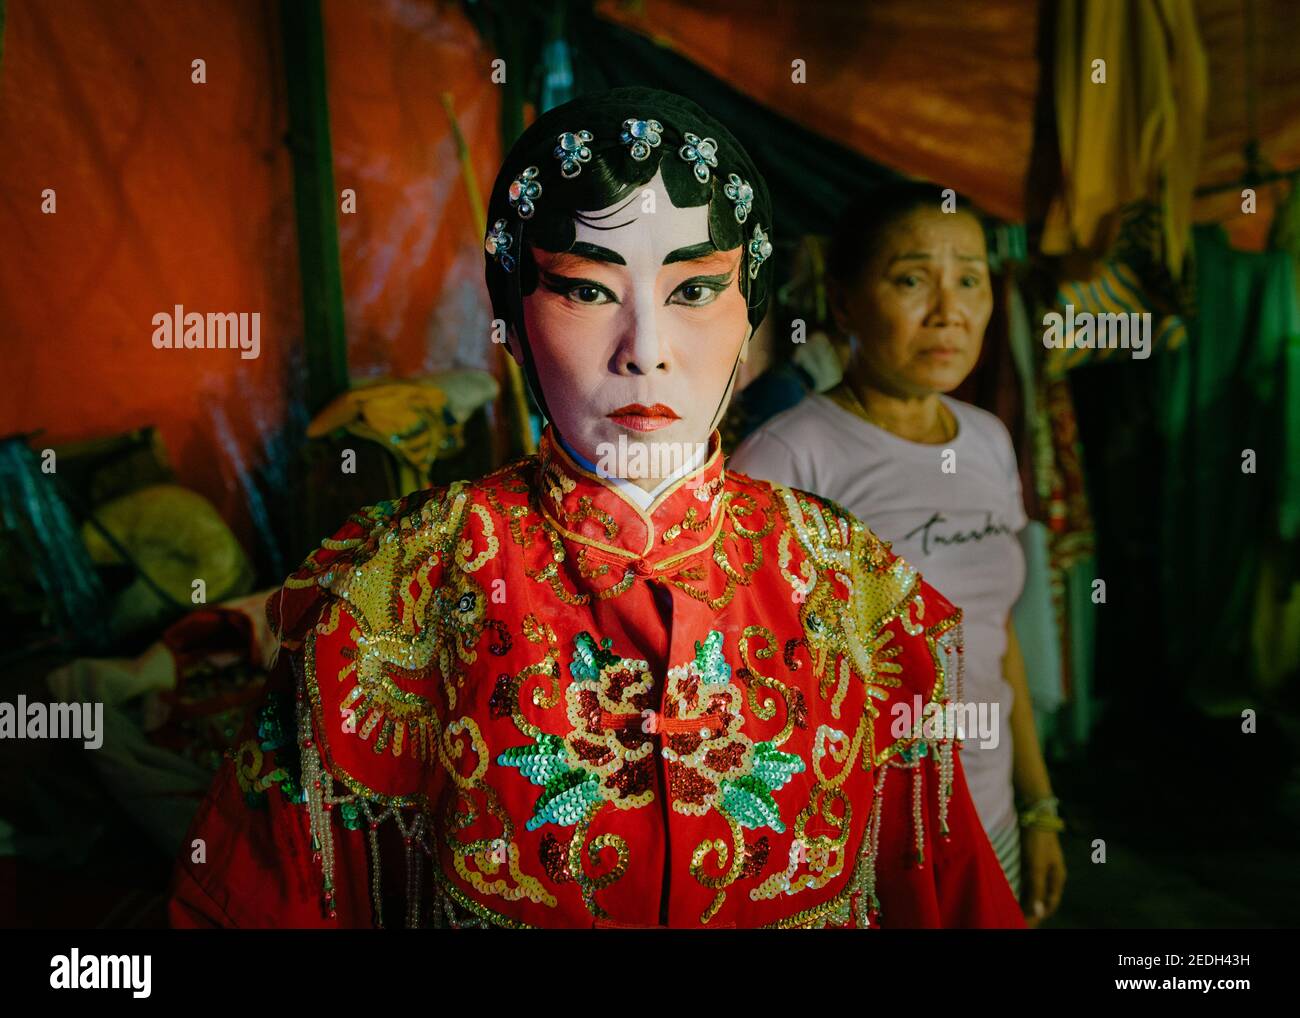 Retrato de una ópera China tailandesa entre bastidores, con su colorido traje y maquillaje, su tocador está en el fondo. Foto de stock